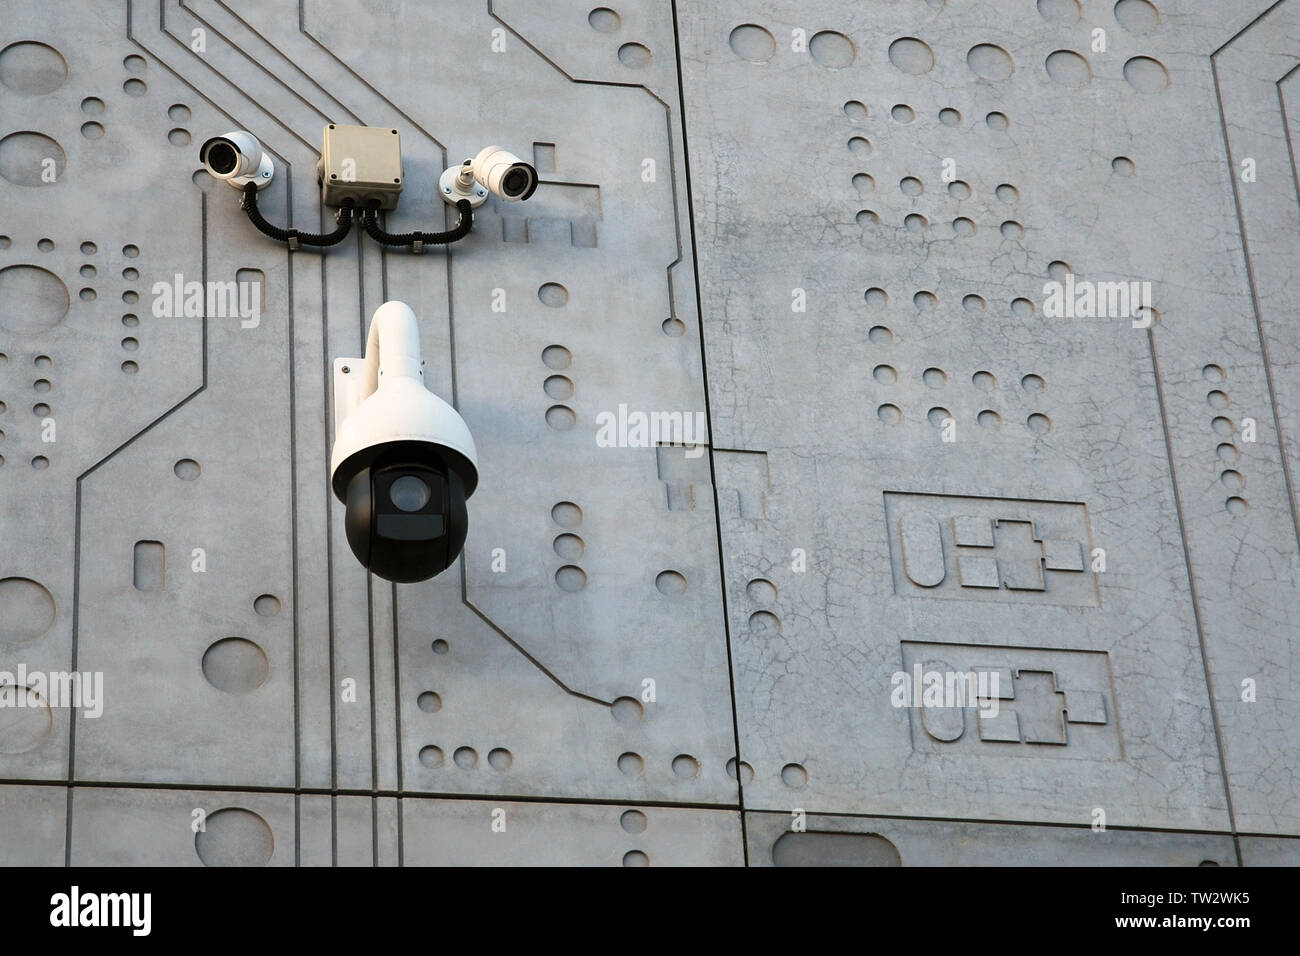 Drei externe Überwachungskameras weiss mit Schwarz auf grauem Beton wand hintergrund stilisierte wie microcircuit Chip Stockfoto